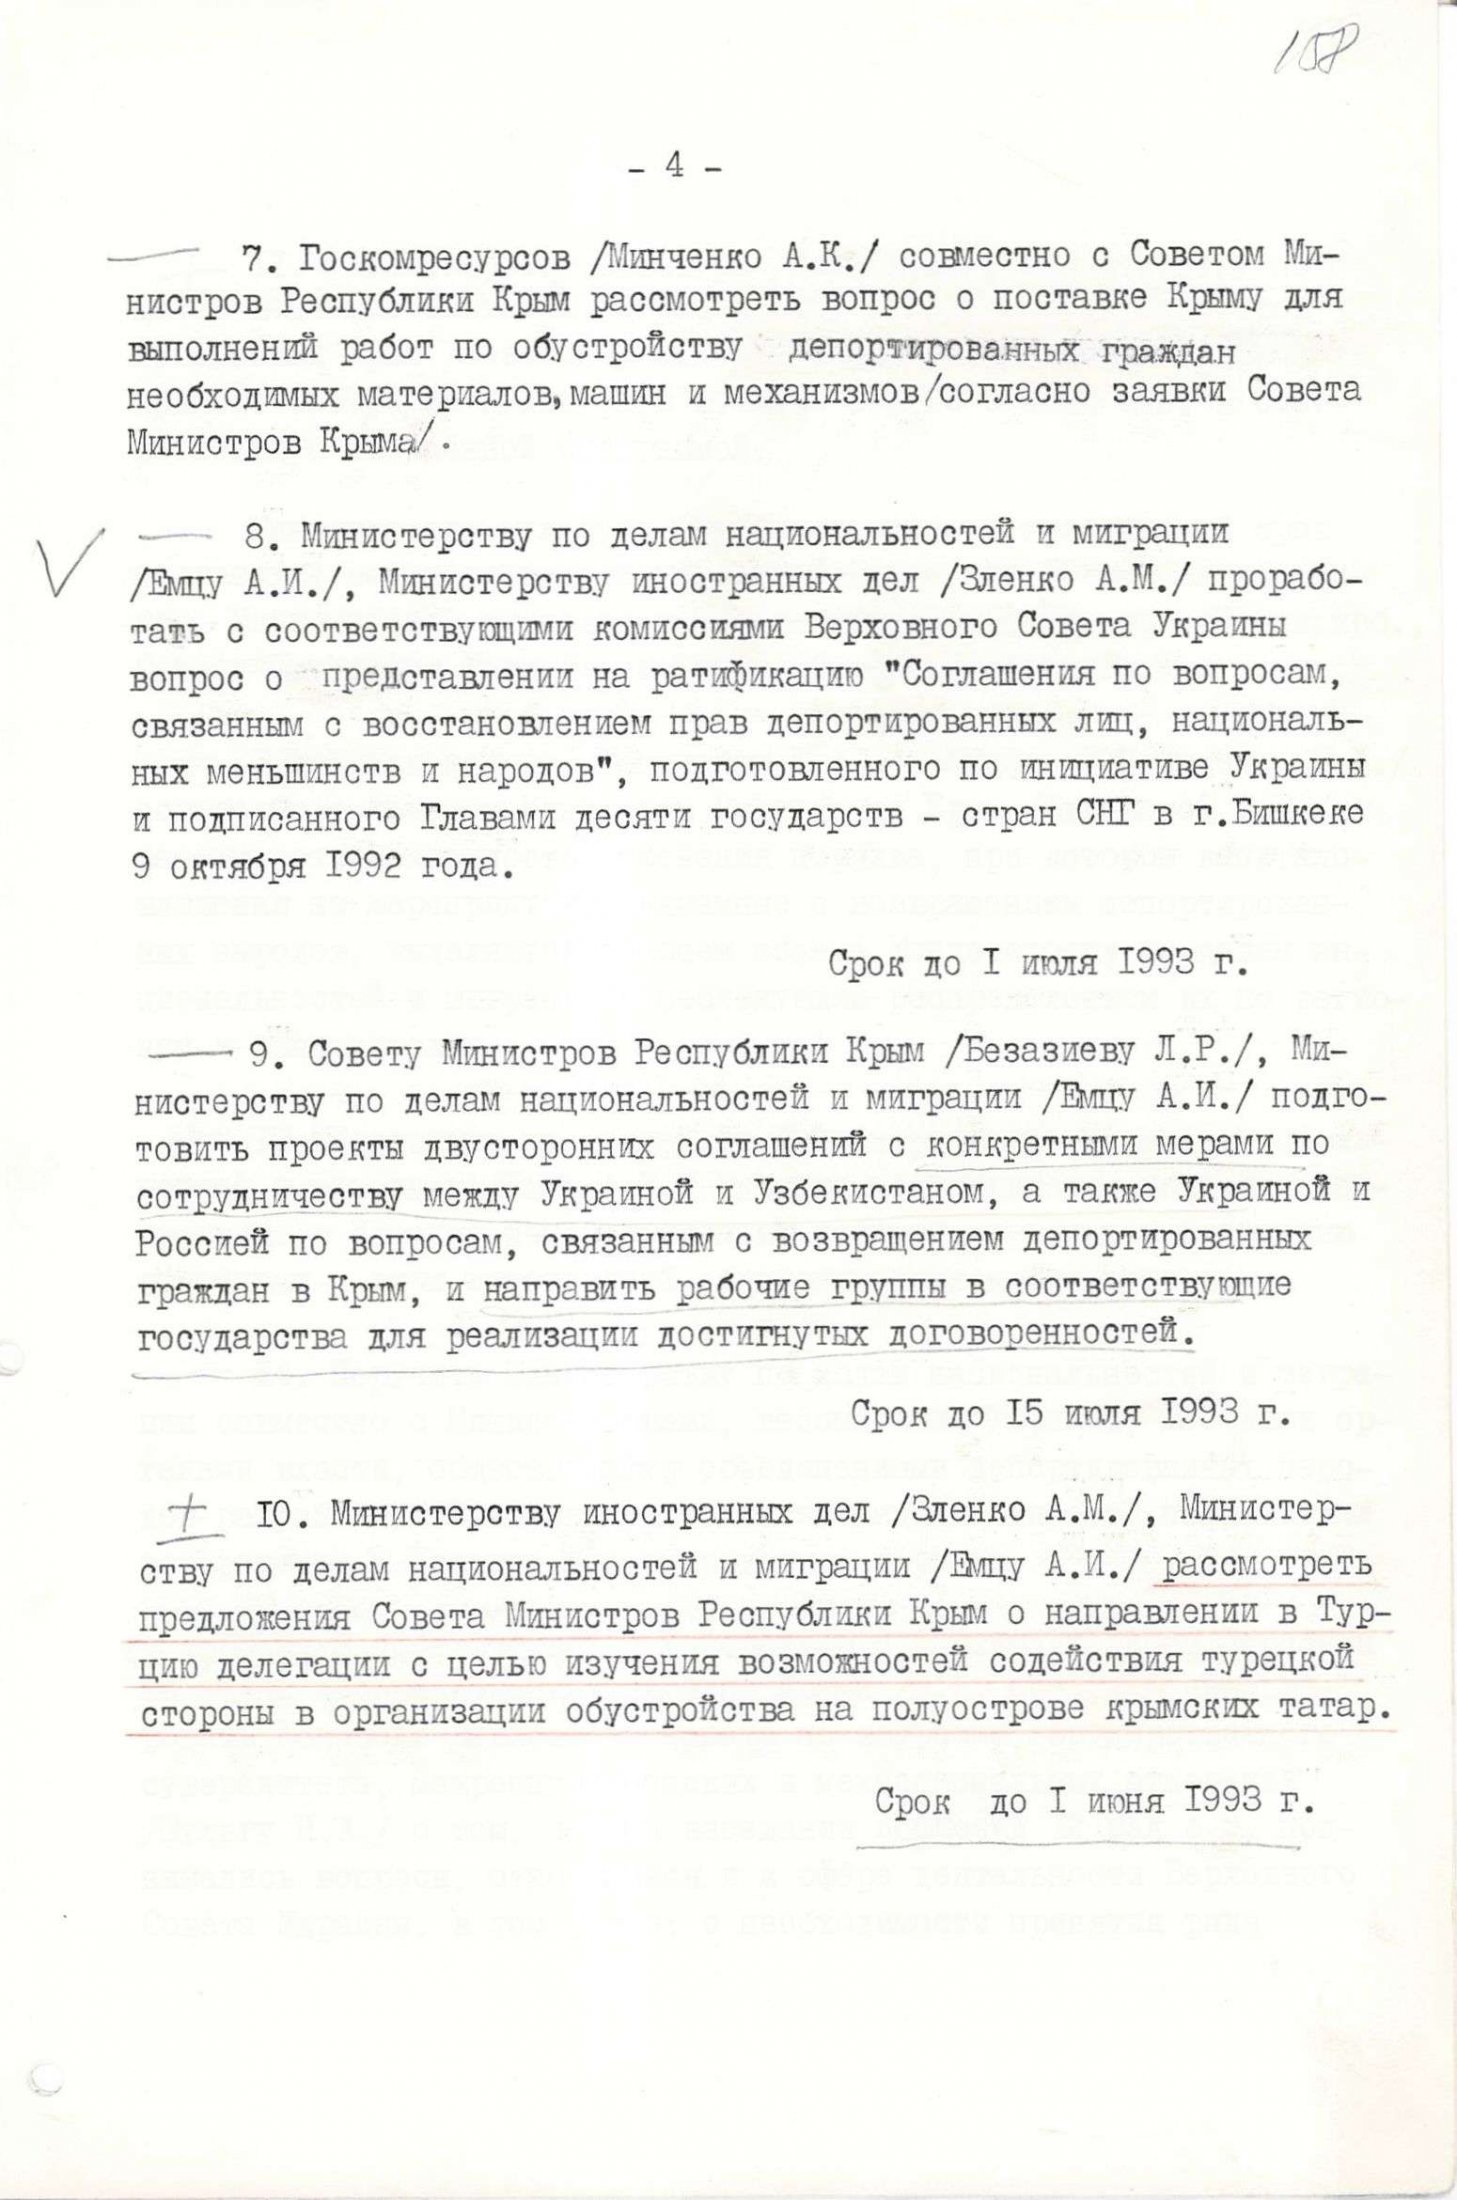 Протокол № 4 засідання Республіканської комісії у справах депортованих народів Криму. 12 квітня 1993 р.